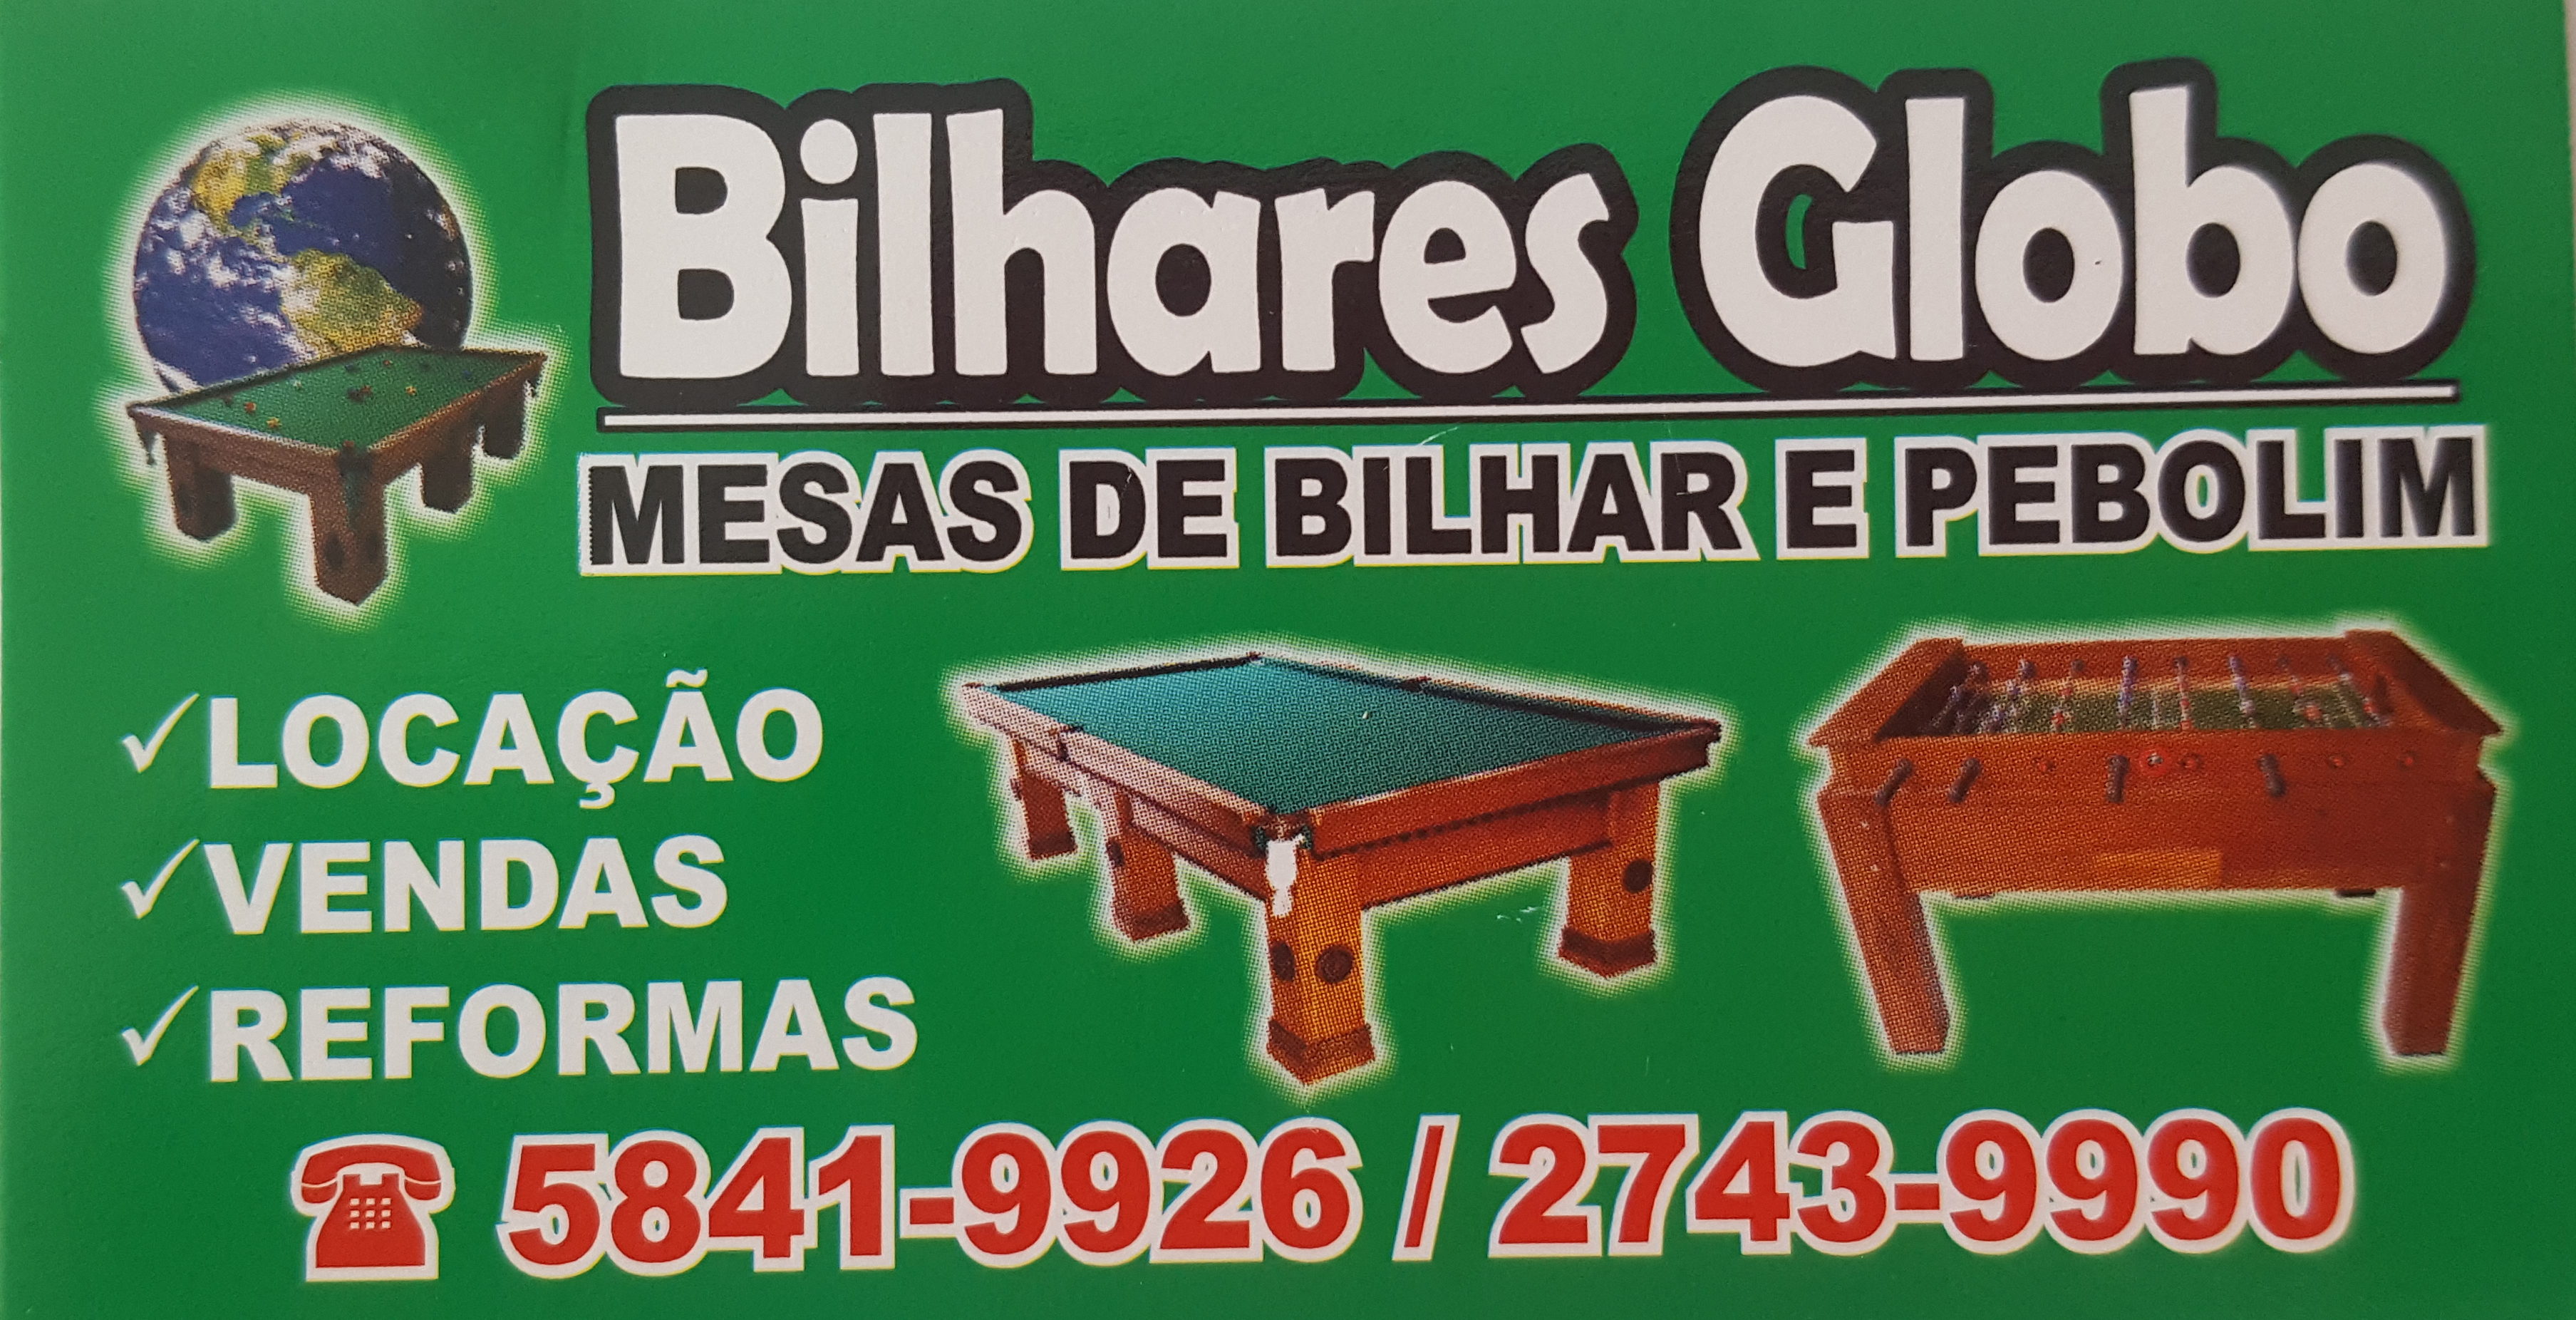 Tacos de Bilhar :: Bilhares Telhado